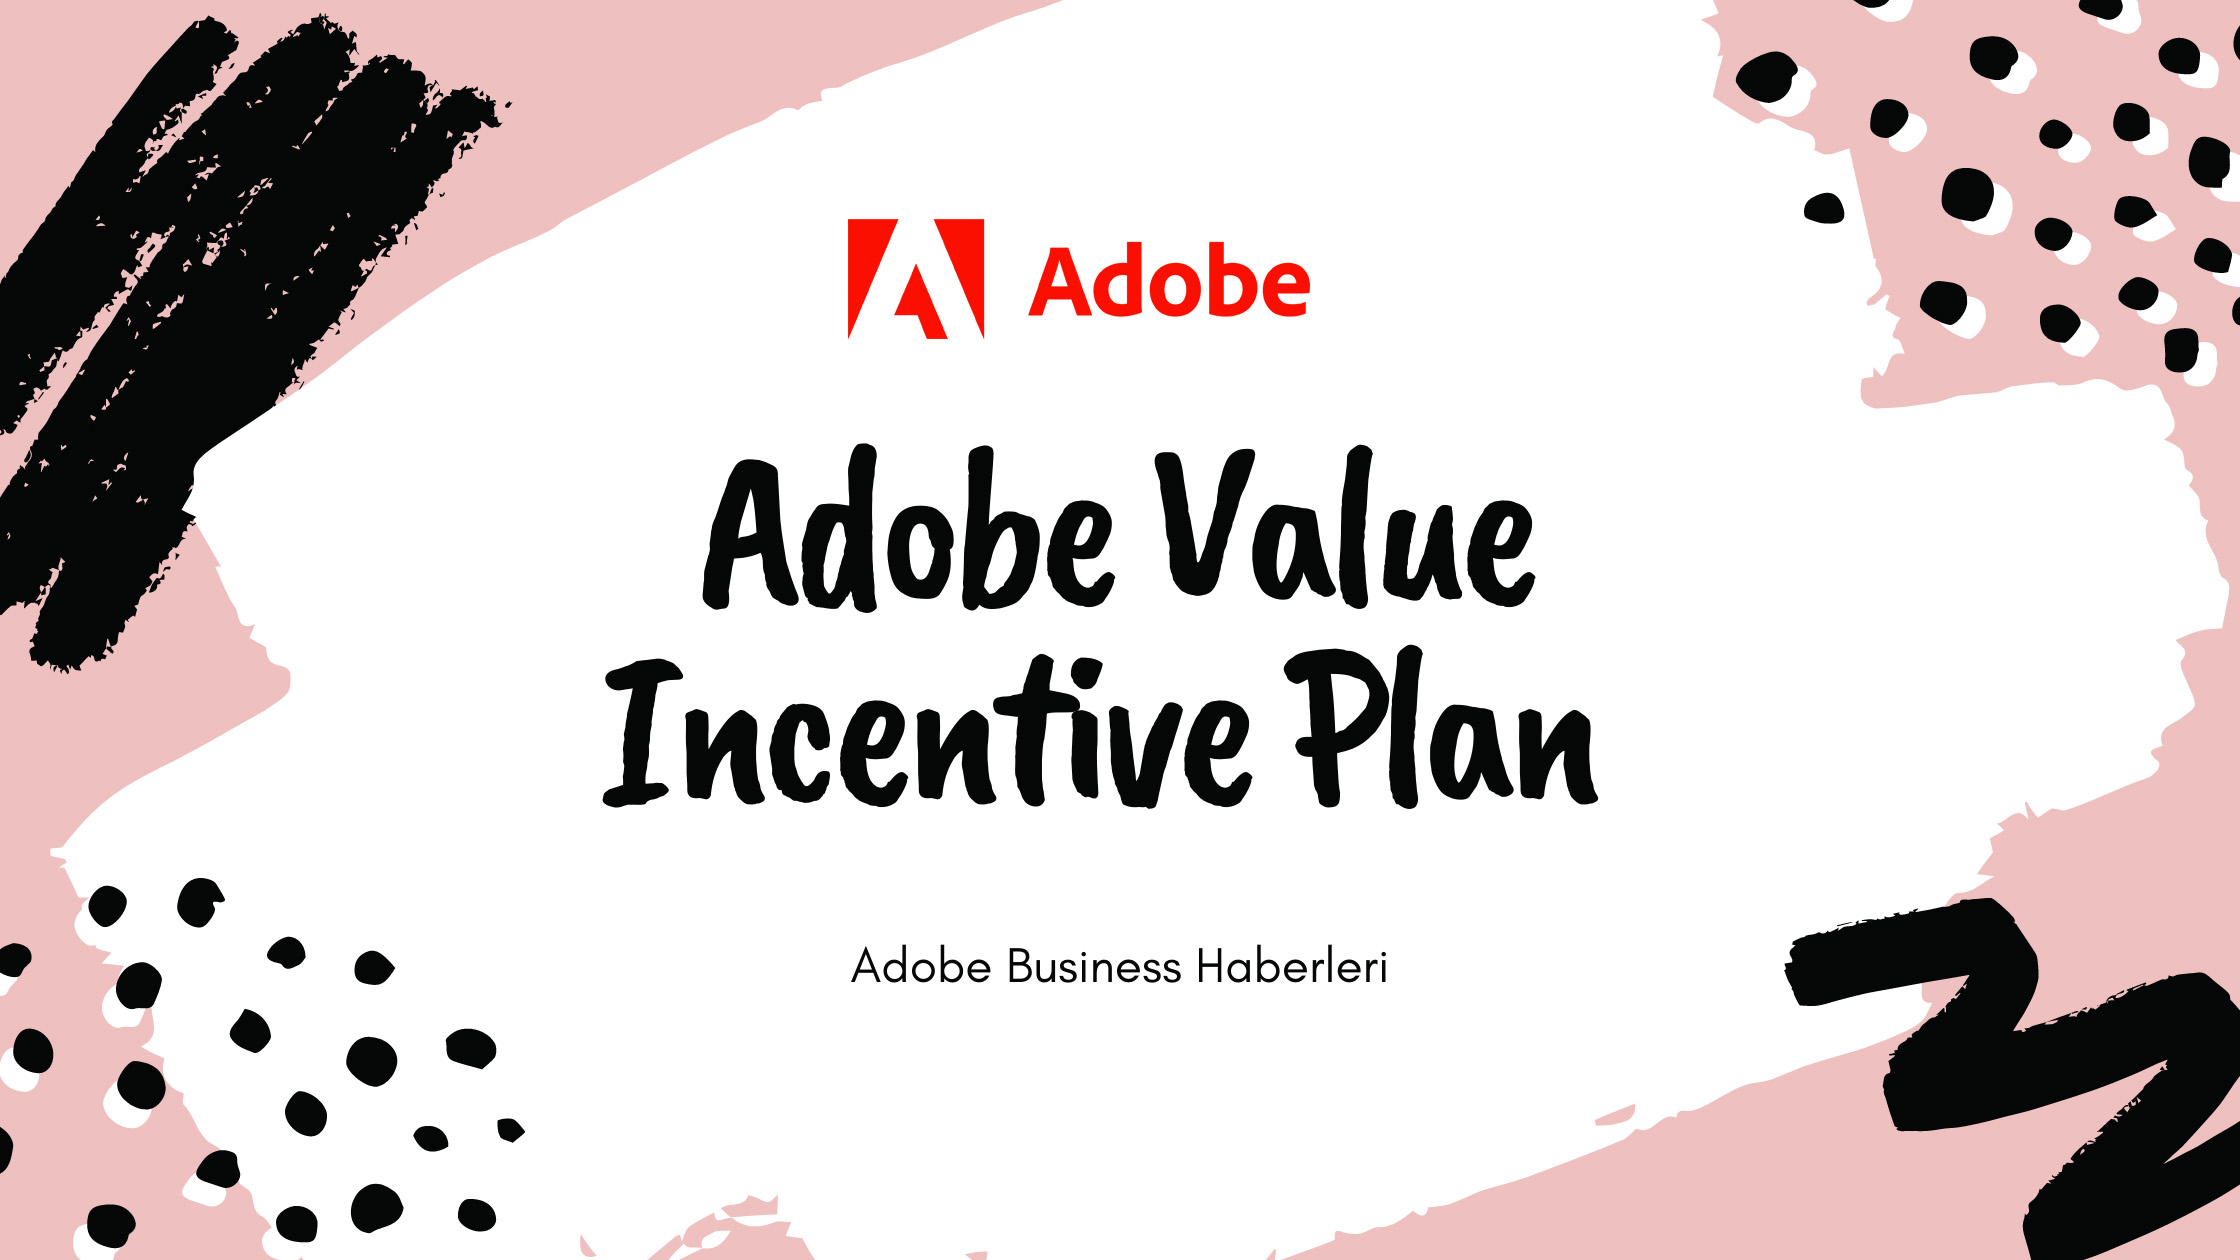 Adobe Value Incentive Plan Sürümünde Yenilikler